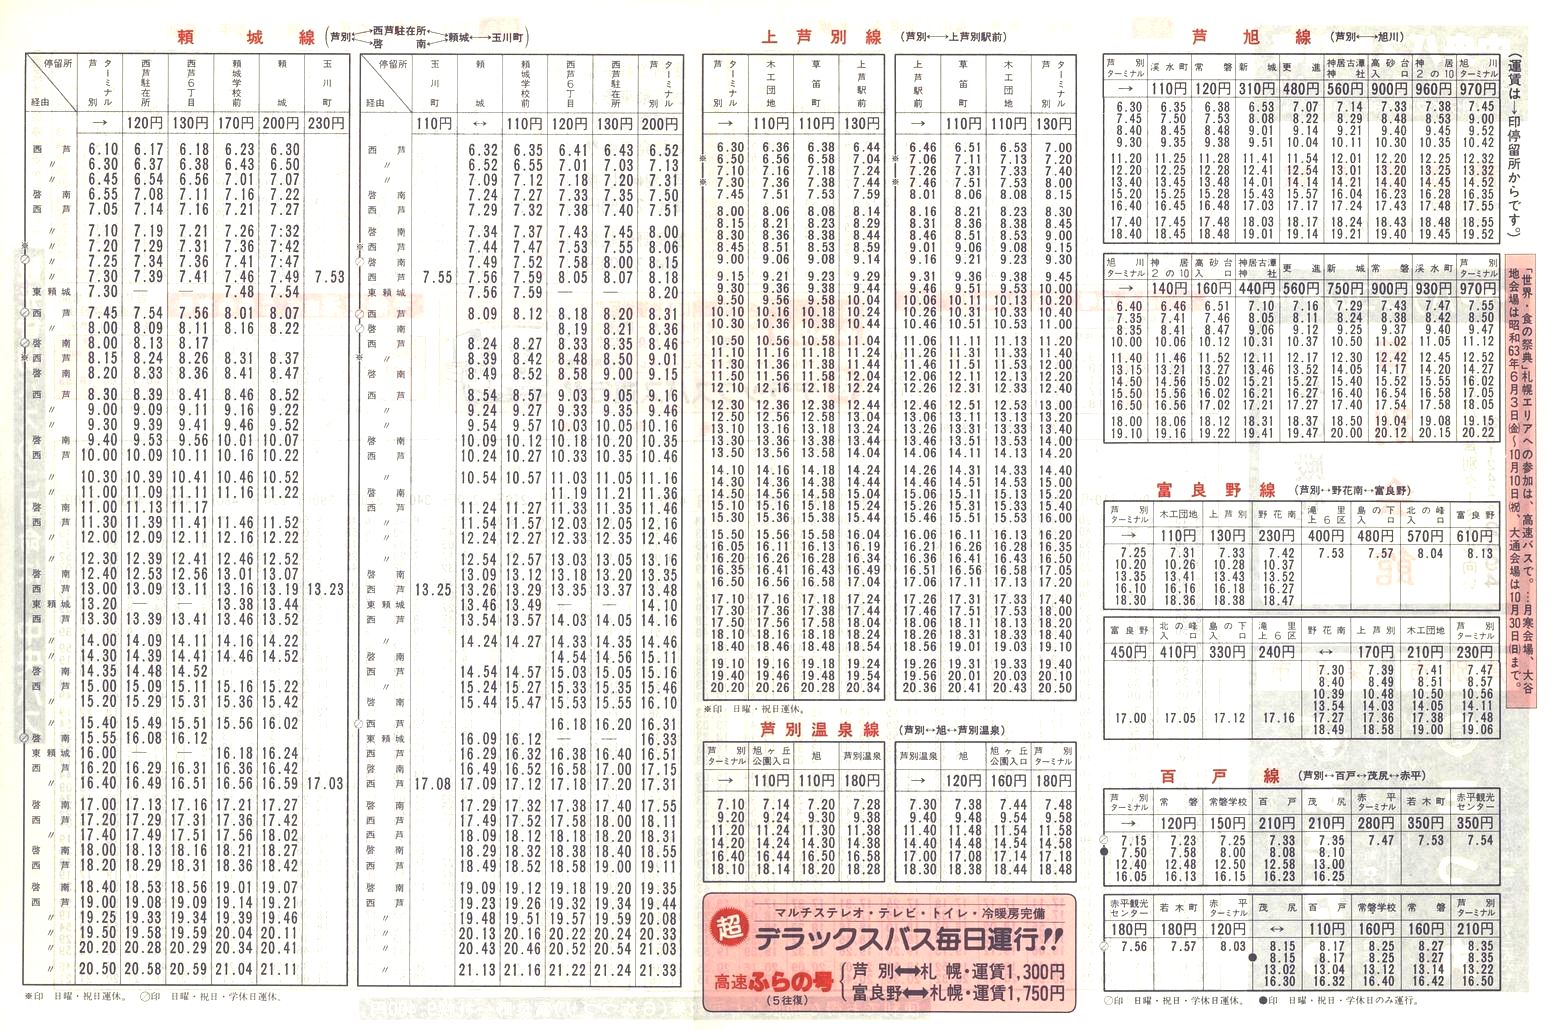 1988-04-10改正_北海道中央バス(空知)_芦別管内線時刻表裏面